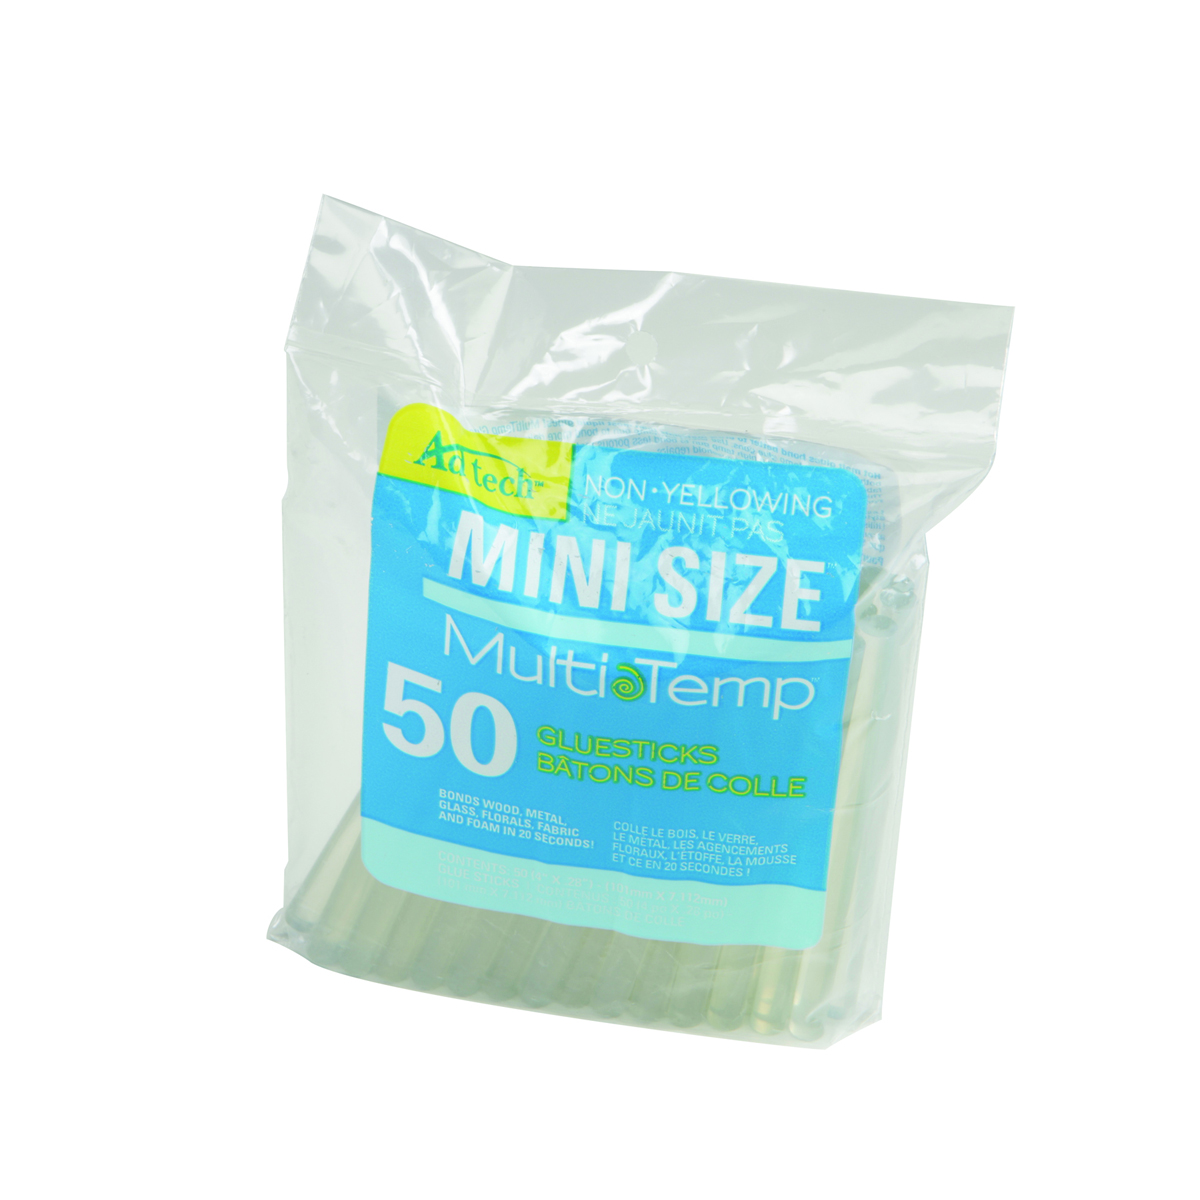 50 Piece MultiTemp® Mini Glue Sticks